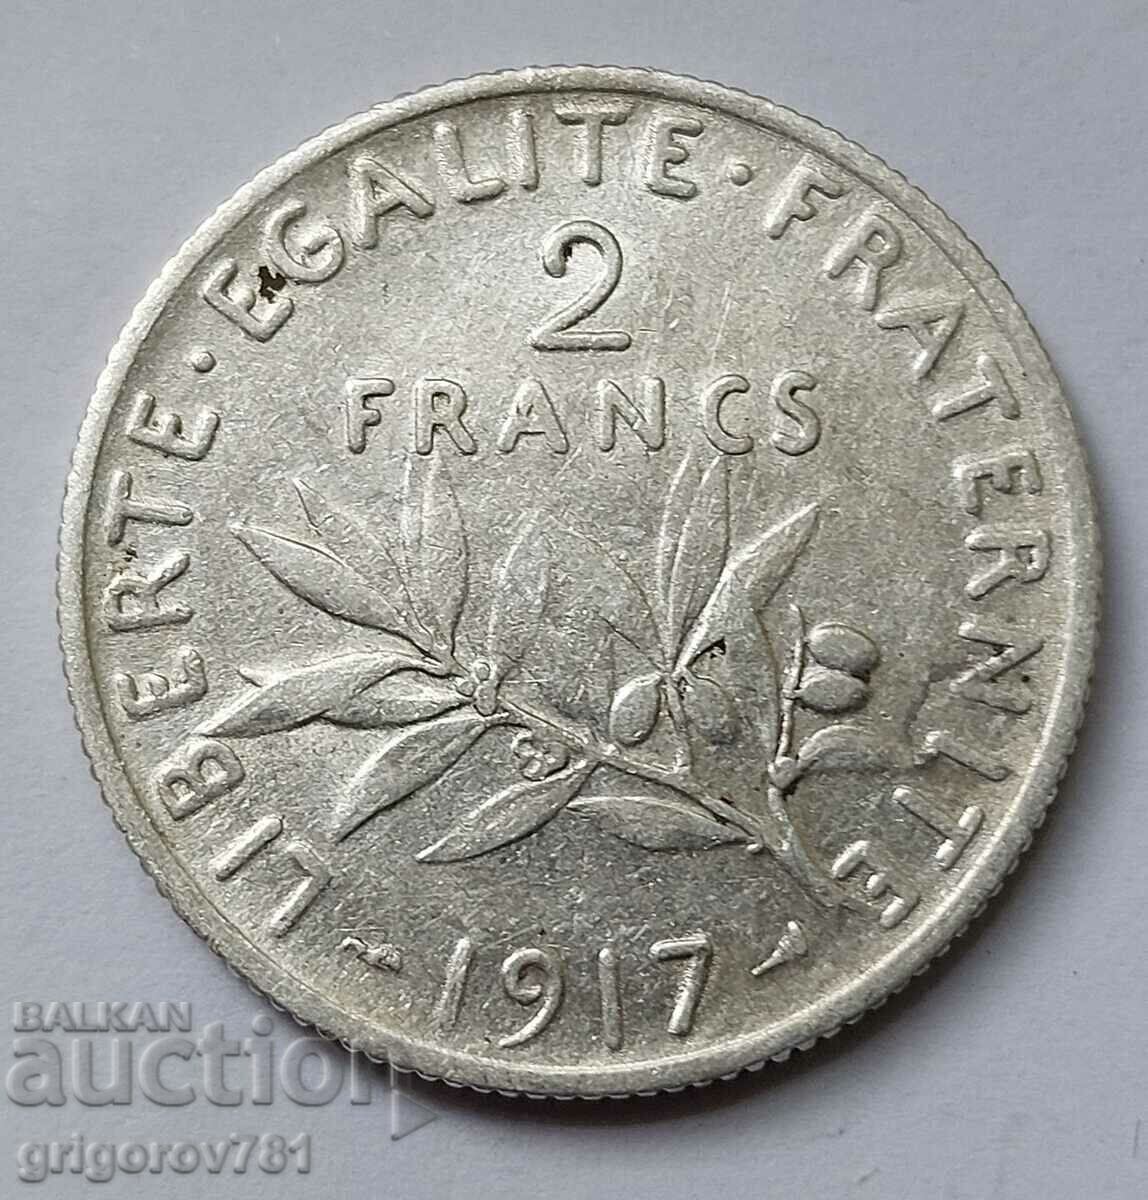 2 Franci Argint Franta 1917 - Moneda de argint #106